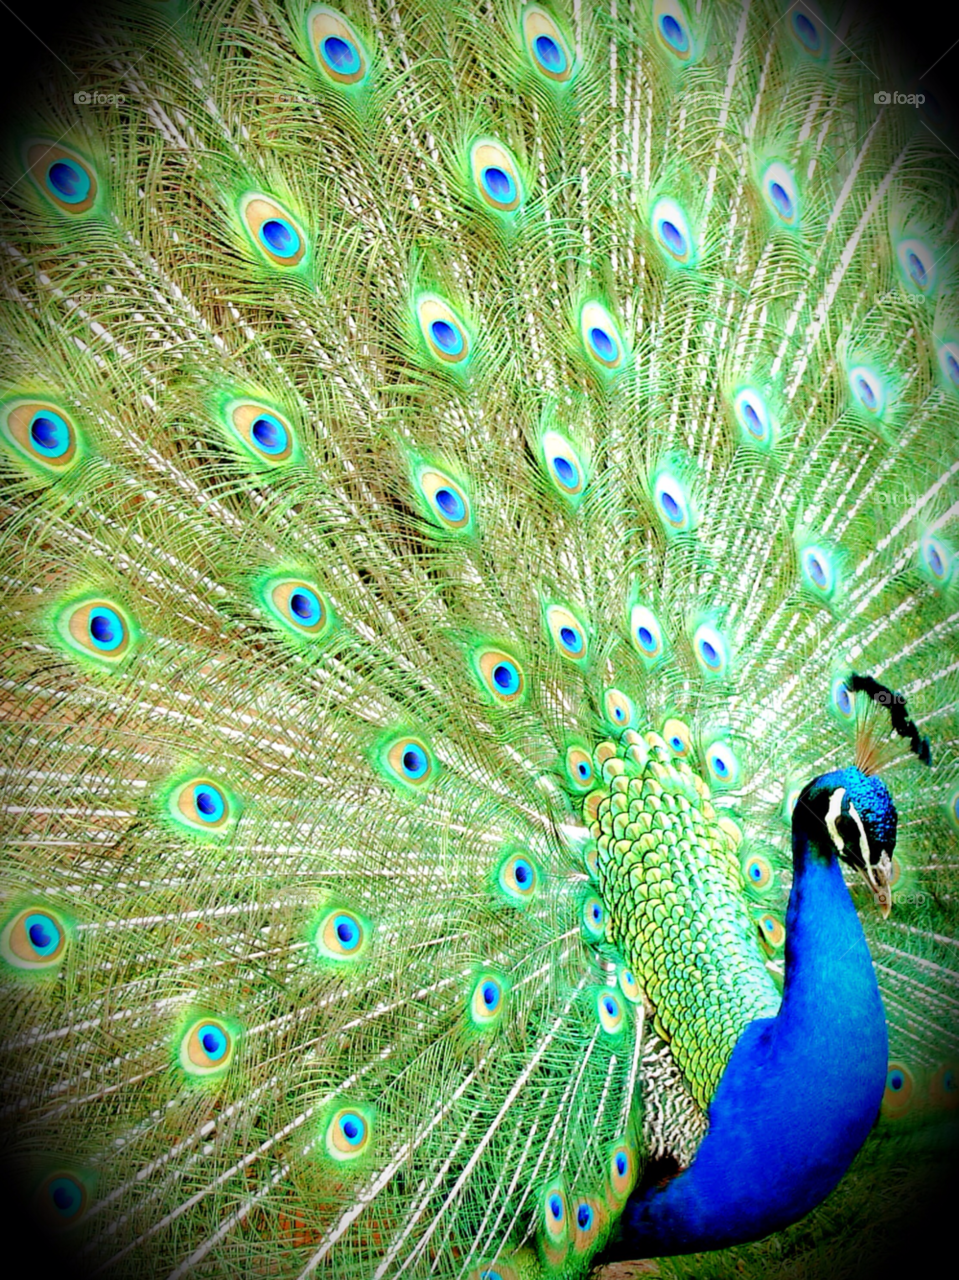 blue bird feathers beautiful by wickerman6666